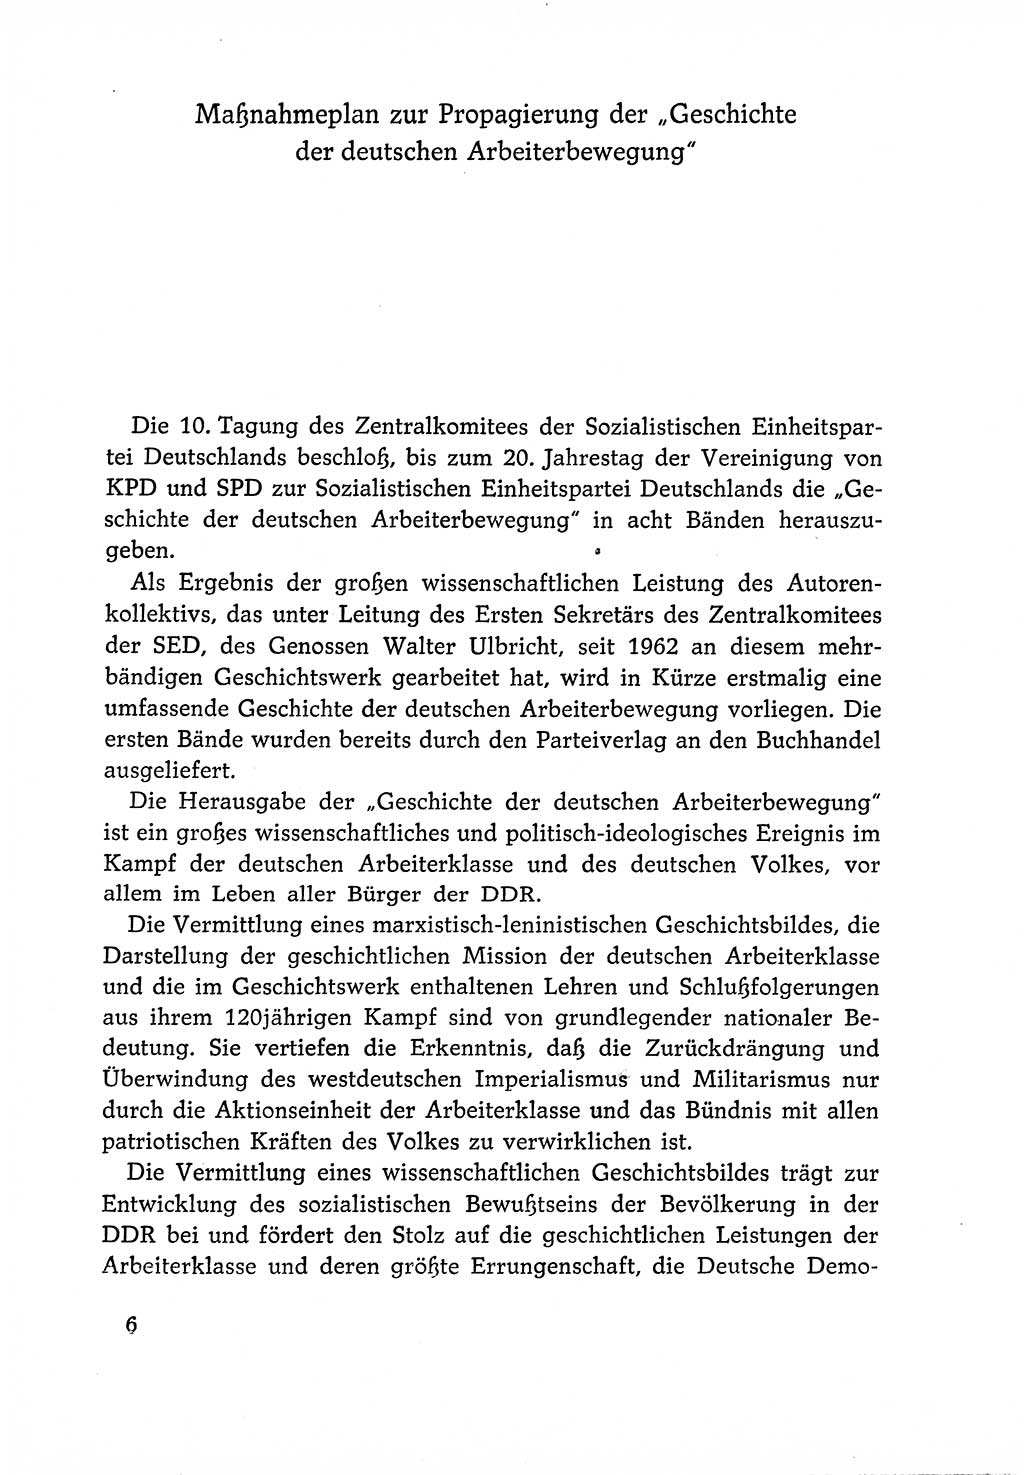 Dokumente der Sozialistischen Einheitspartei Deutschlands (SED) [Deutsche Demokratische Republik (DDR)] 1966-1967, Seite 6 (Dok. SED DDR 1966-1967, S. 6)